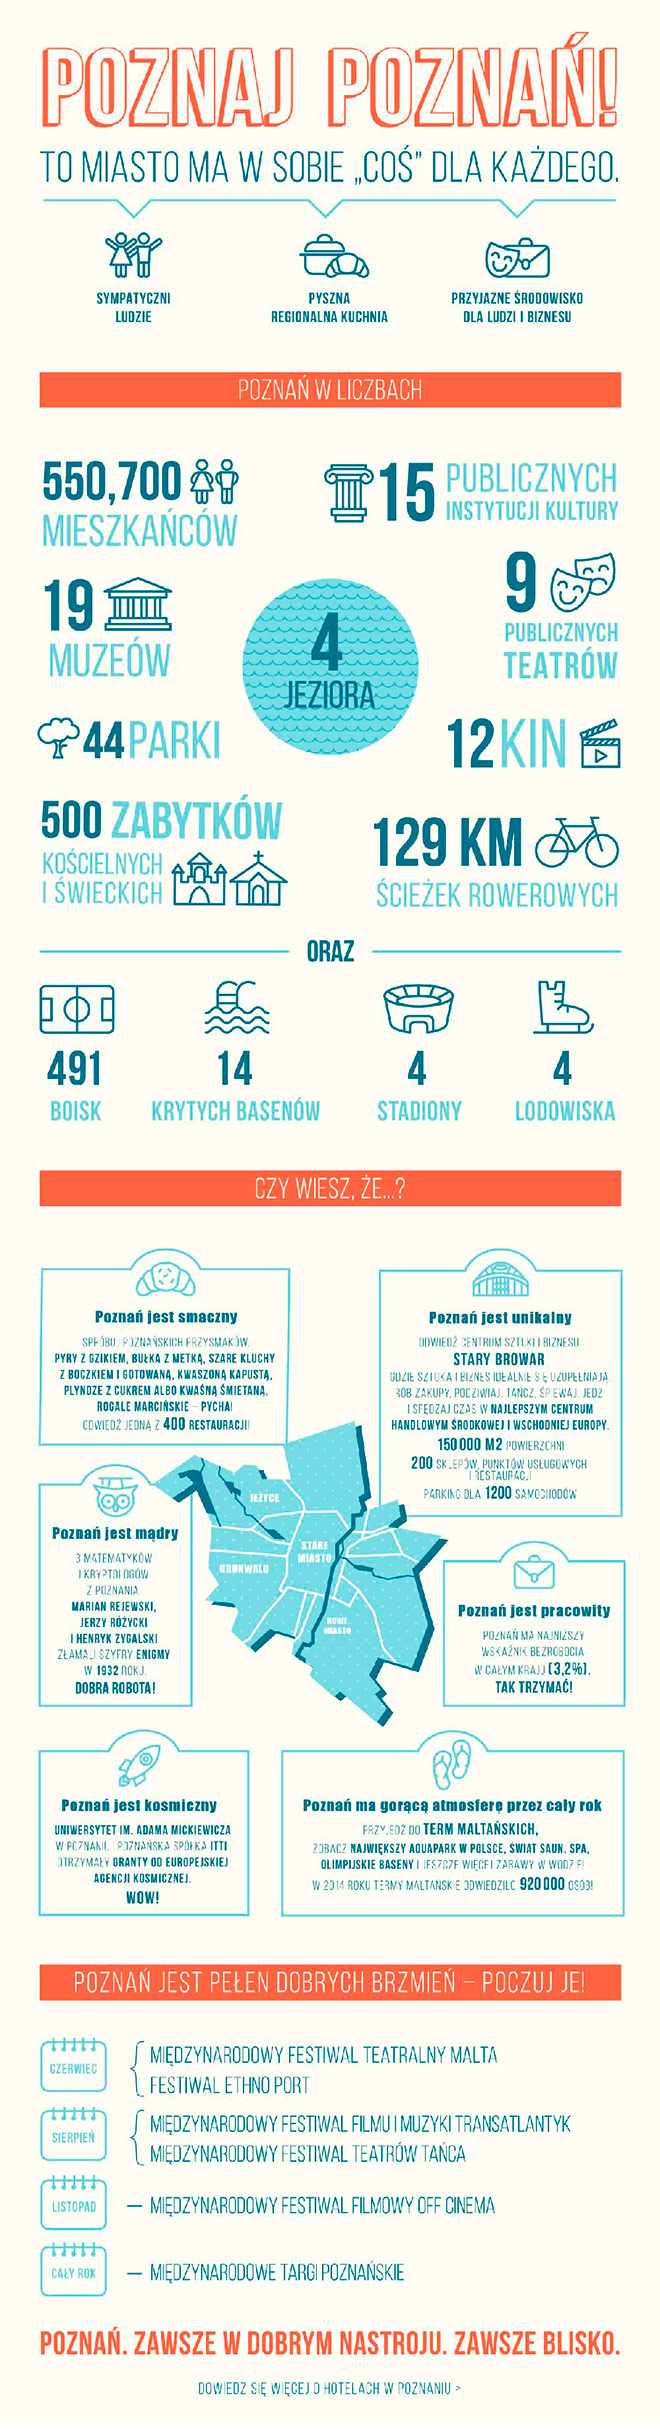 Daj się zaskoczyć i zobacz infografikę o Poznaniu! Wybierz hotel i ciesz się urokami tego miasta!